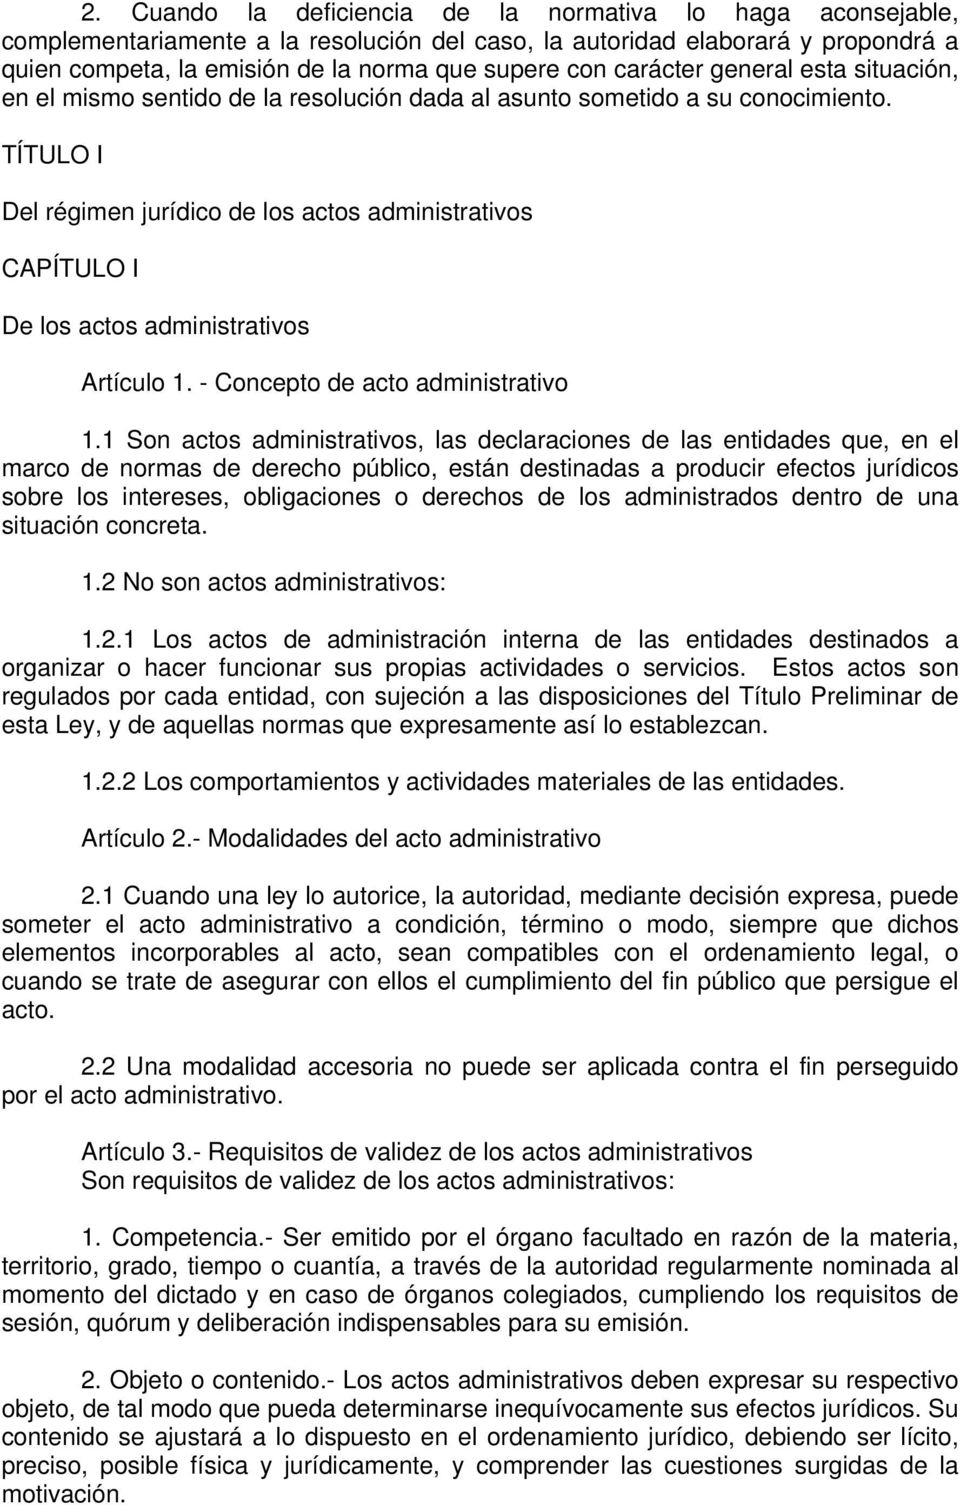 TÍTULO I Del régimen jurídico de los actos administrativos CAPÍTULO I De los actos administrativos Artículo 1. - Concepto de acto administrativo 1.